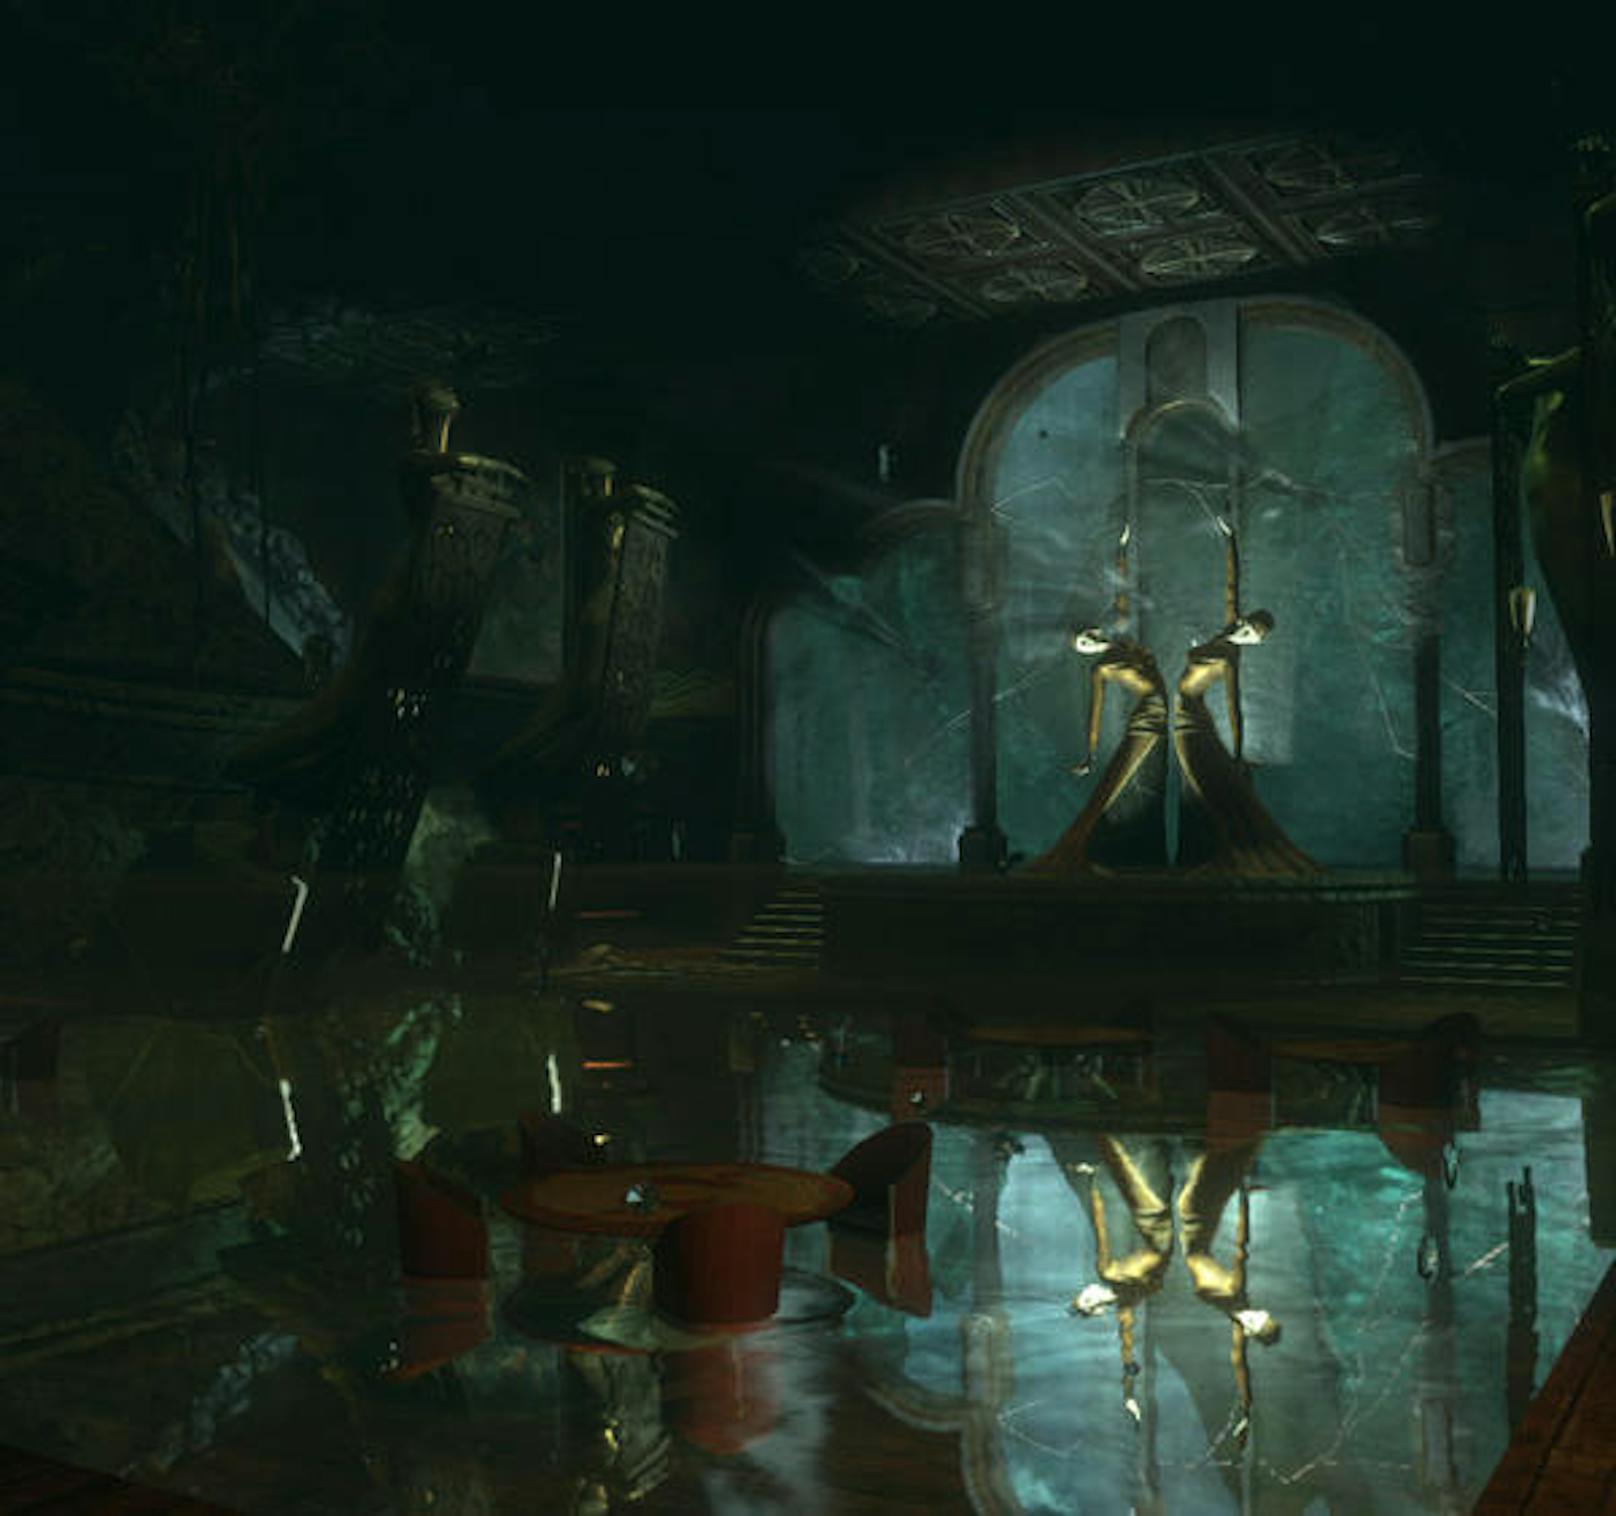 BioShock bietet, wie auch seine Nachfolger, brillante Story-Twists - und einige der heftigsten Jumpscares der Spielewelt. Daneben greifen aber alle Spiele auch reale Themen und Konflikte auf.